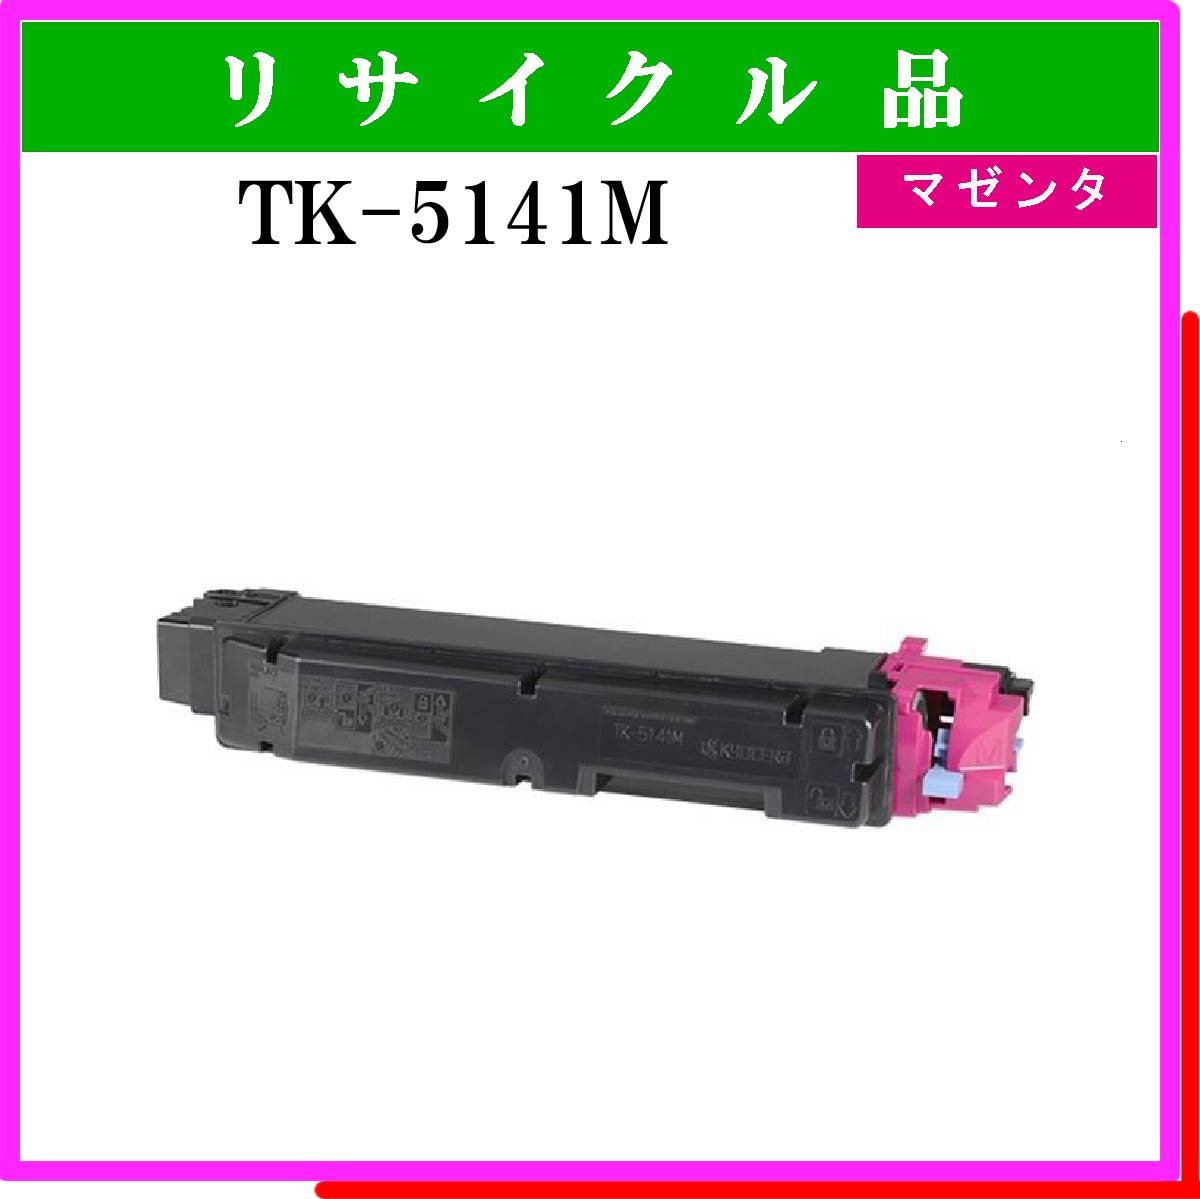 TK-5141M